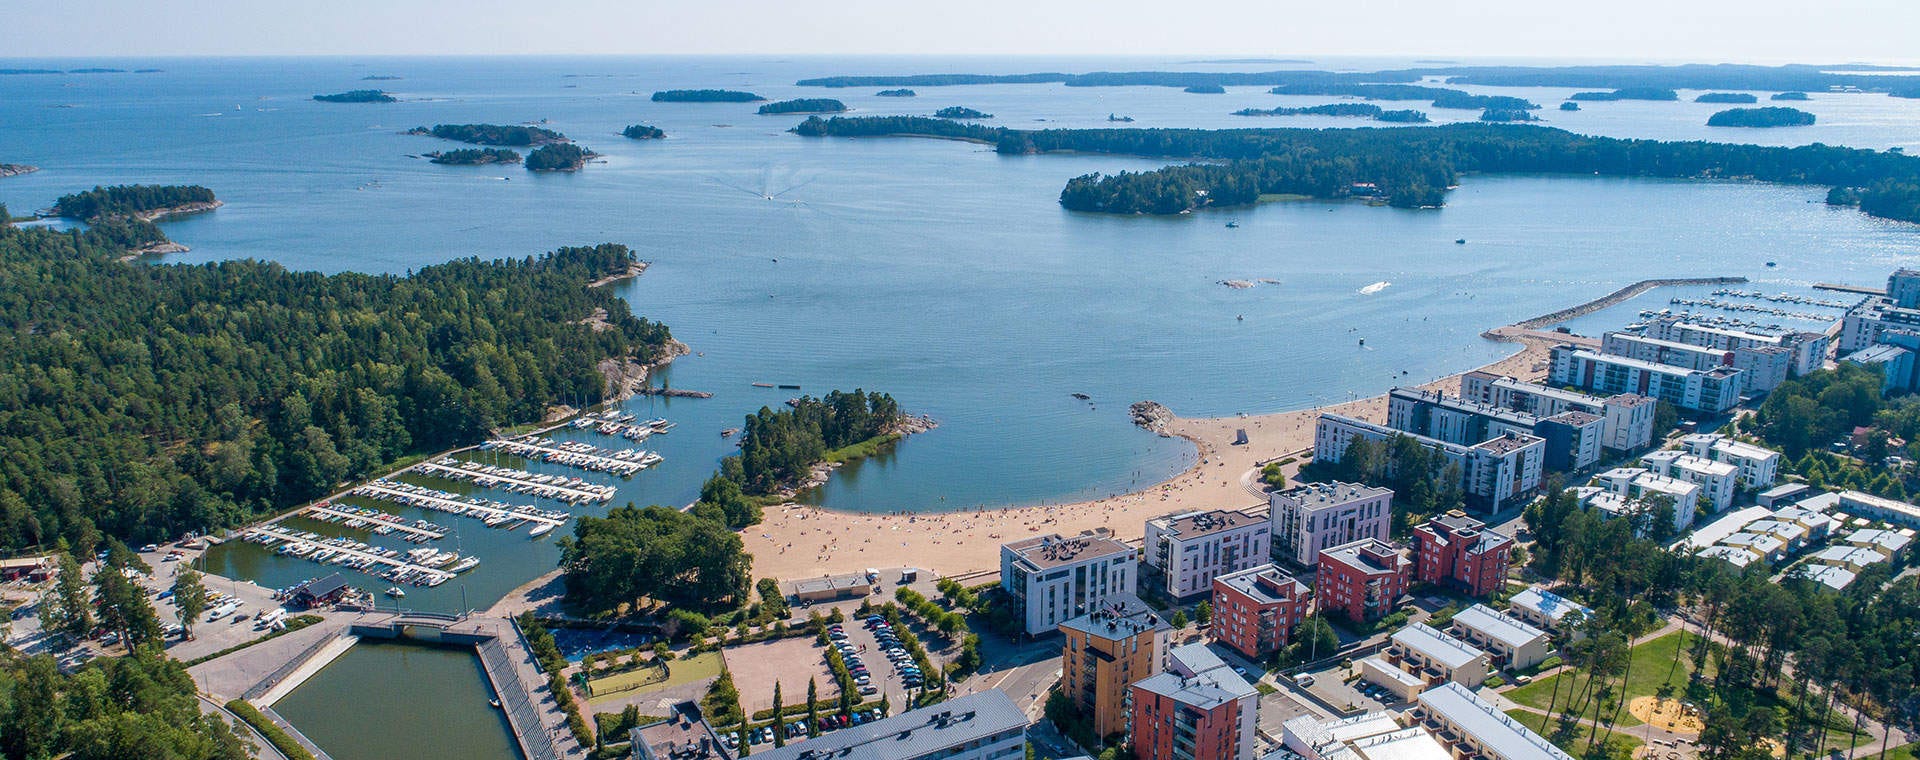 Myytävät asunnot itä-Helsinki Vuosaari pääkaupunkiseutu PKS Aurinkolahti